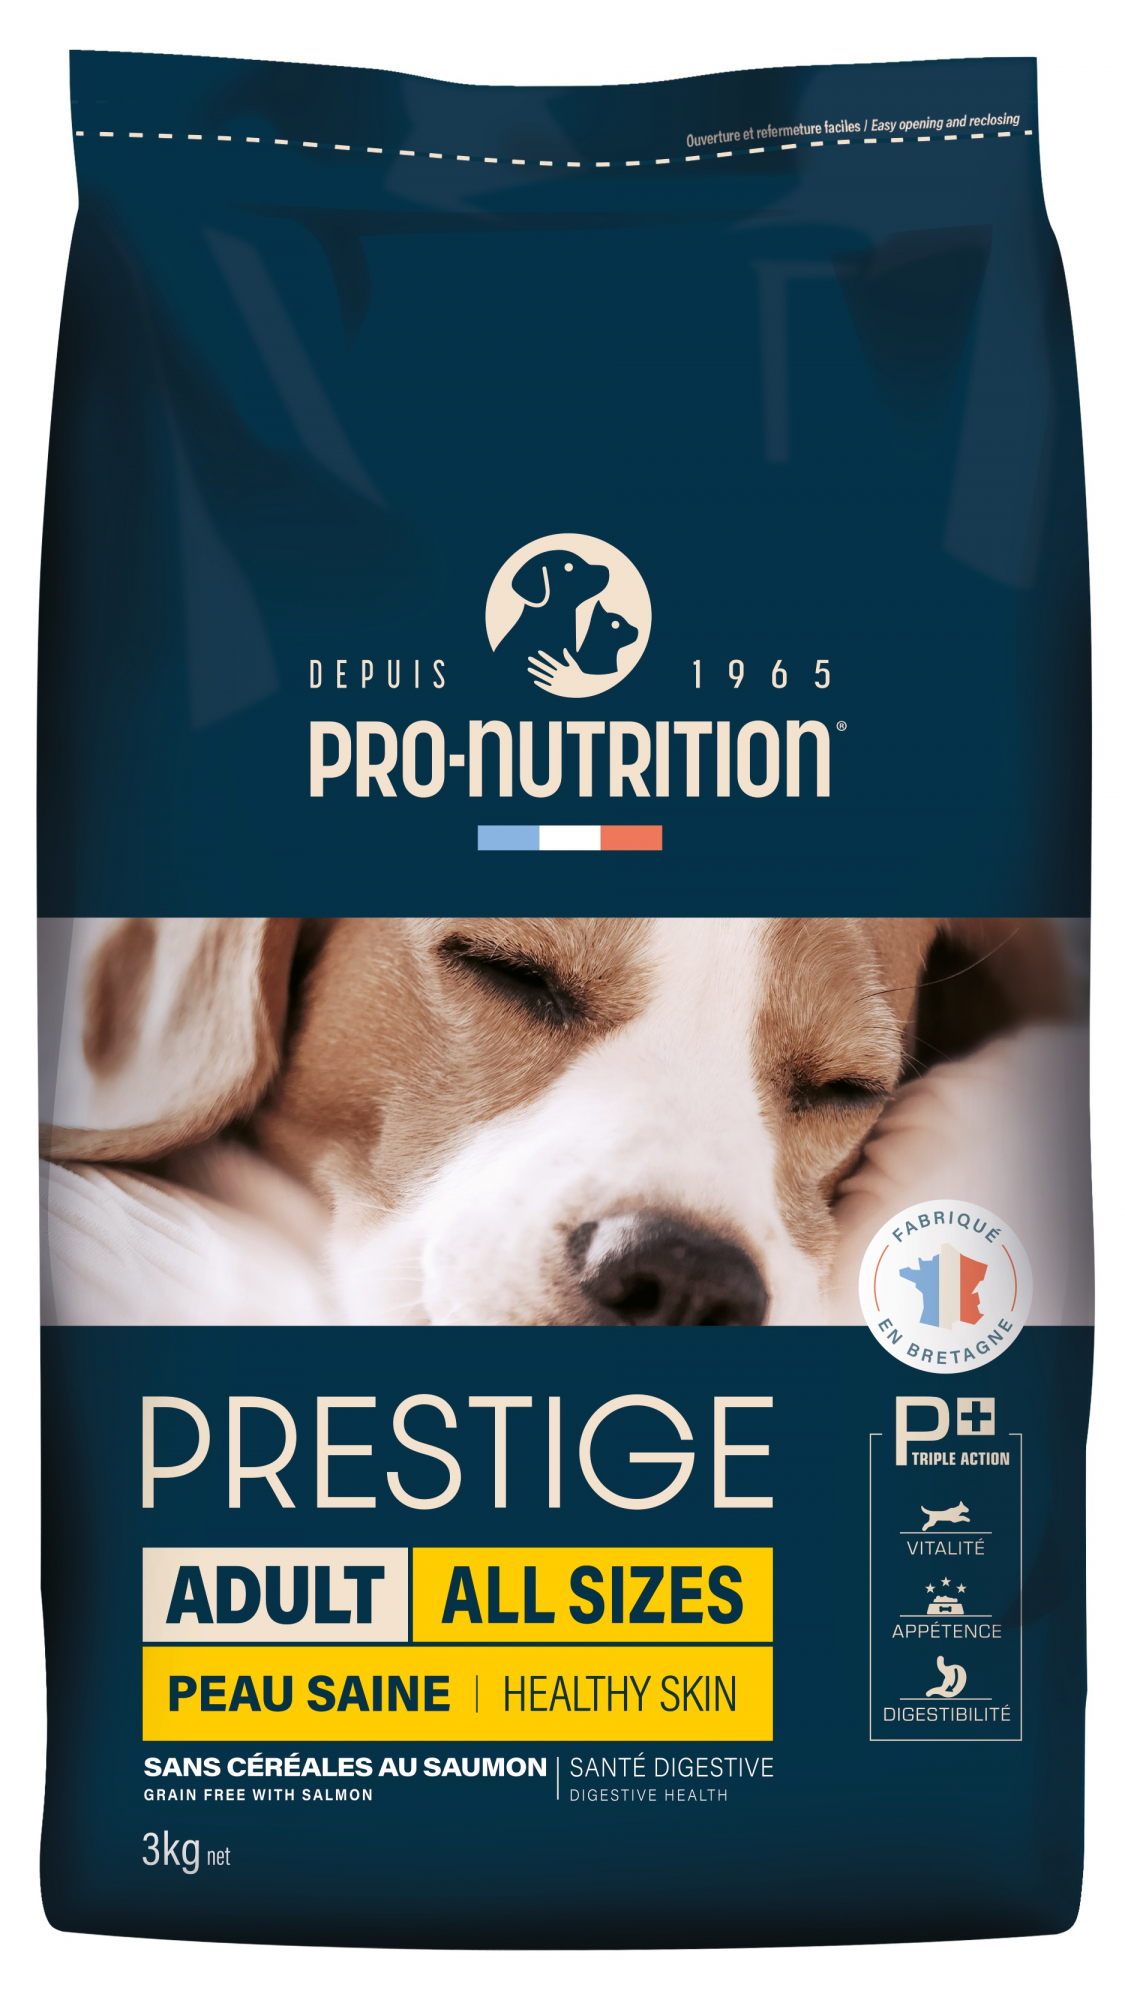 PRO-NUTRITION PRESTIGE Adult Salmón Sin Cereales para perros sensibles